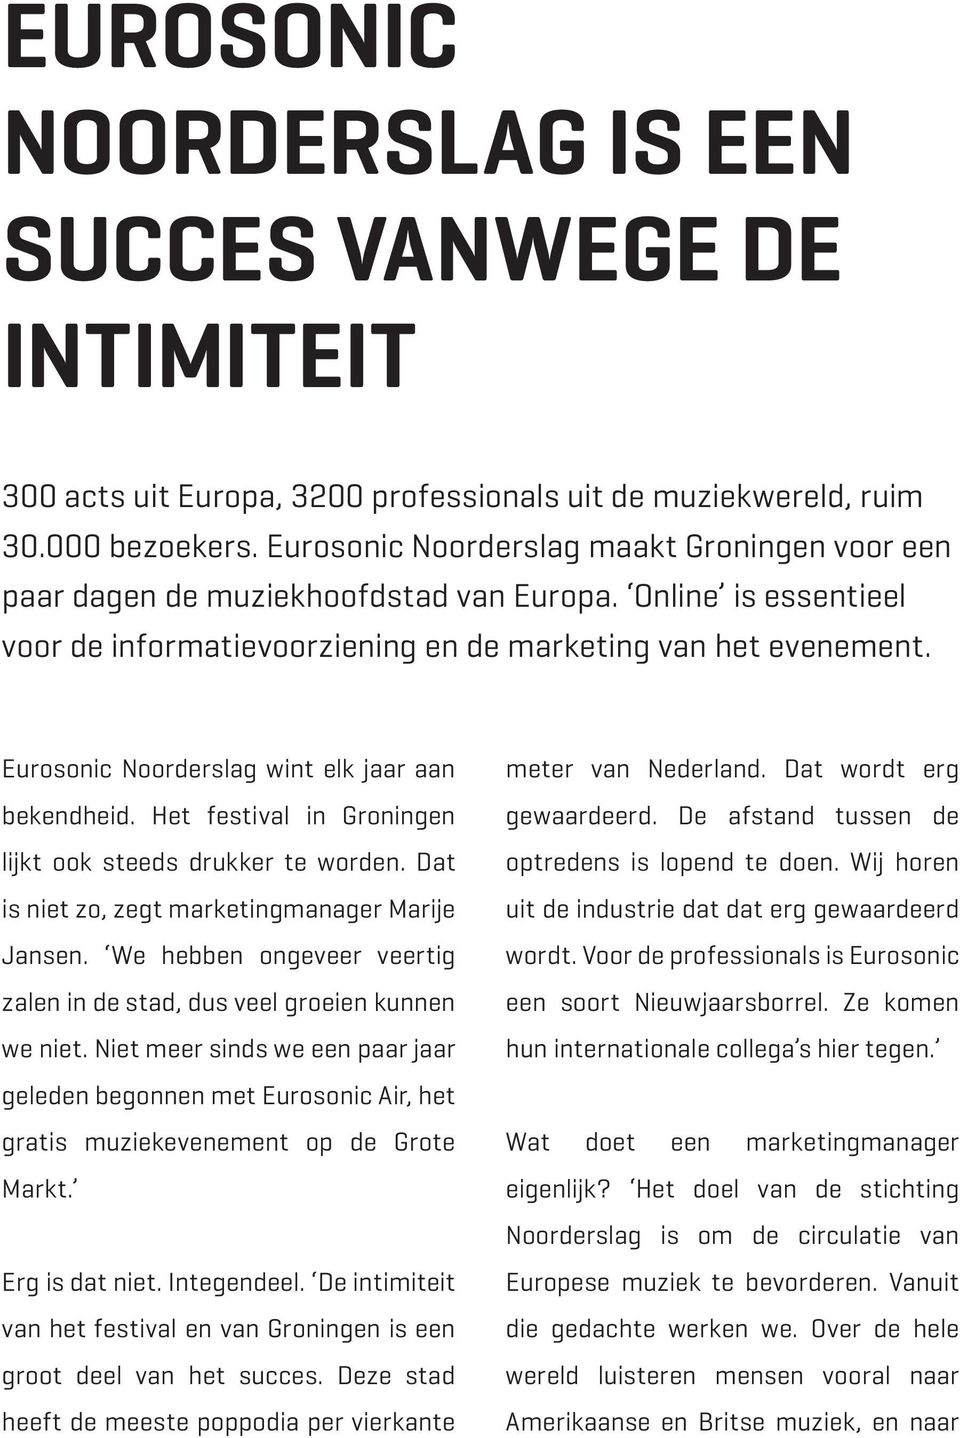 Eurosonic Noorderslag wint elk jaar aan bekendheid. Het festival in Groningen lijkt ook steeds drukker te worden. Dat is niet zo, zegt marketingmanager Marije Jansen.